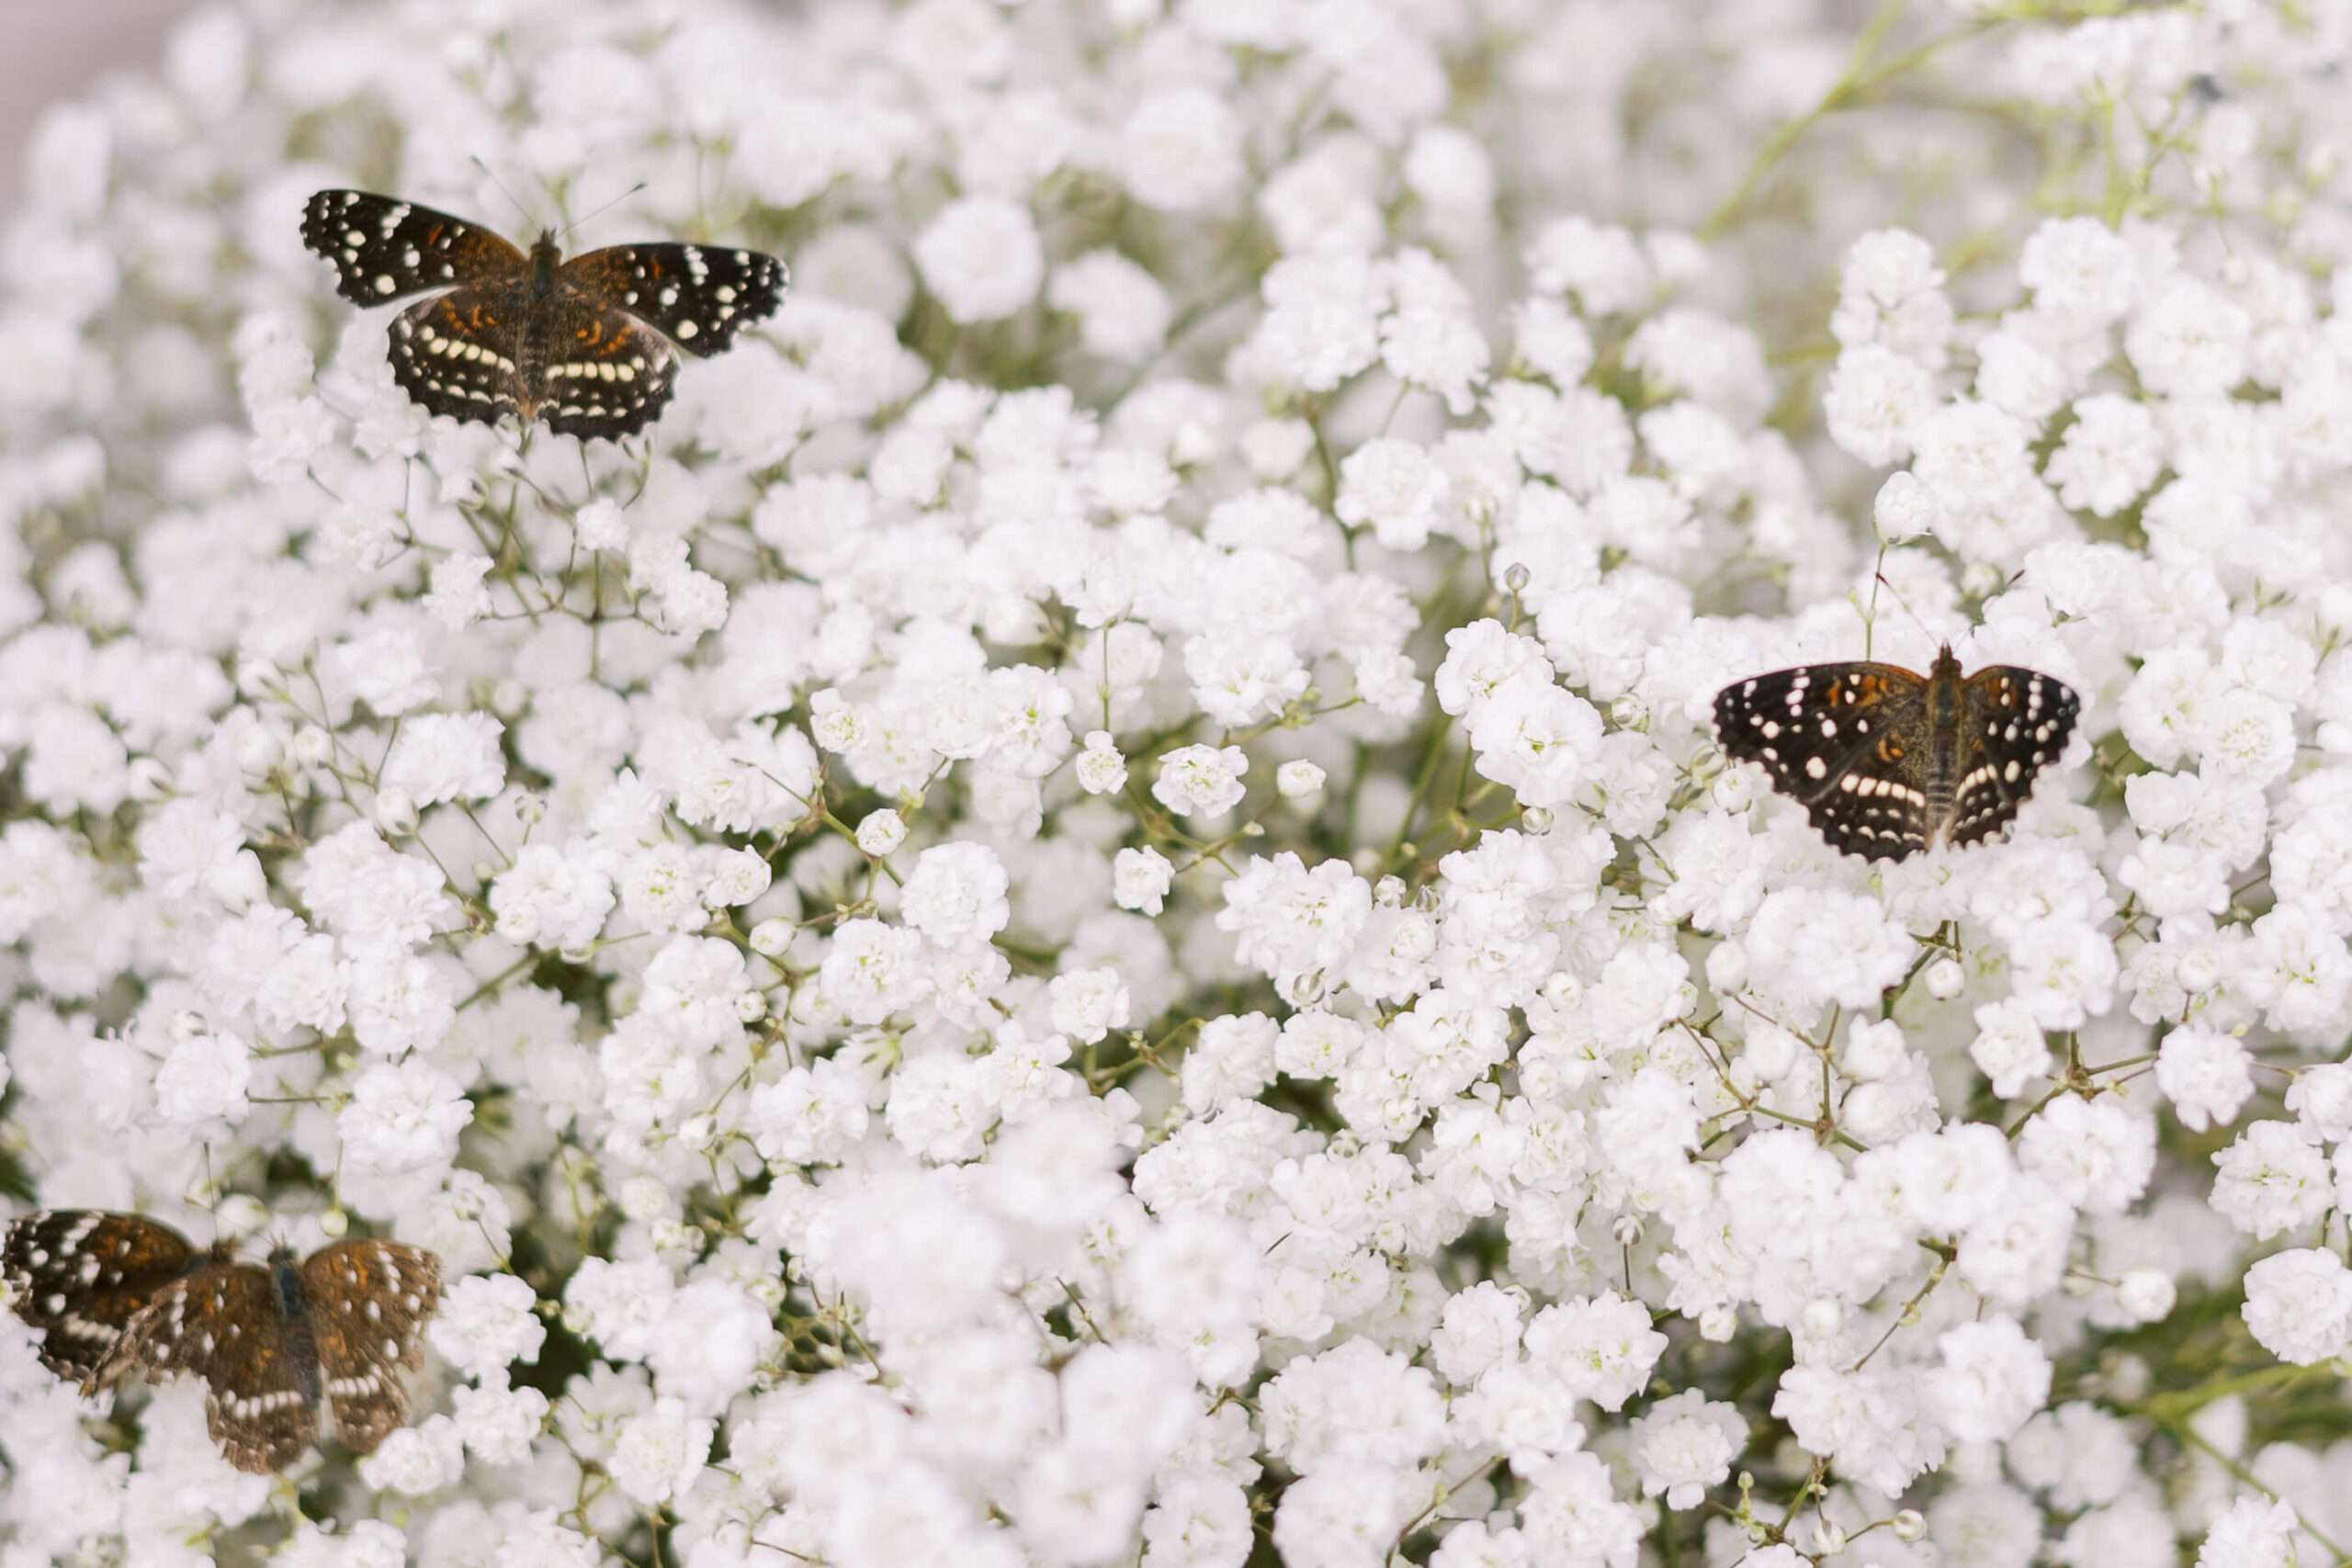 Monarch butterflies resting on a field of baby's breath 